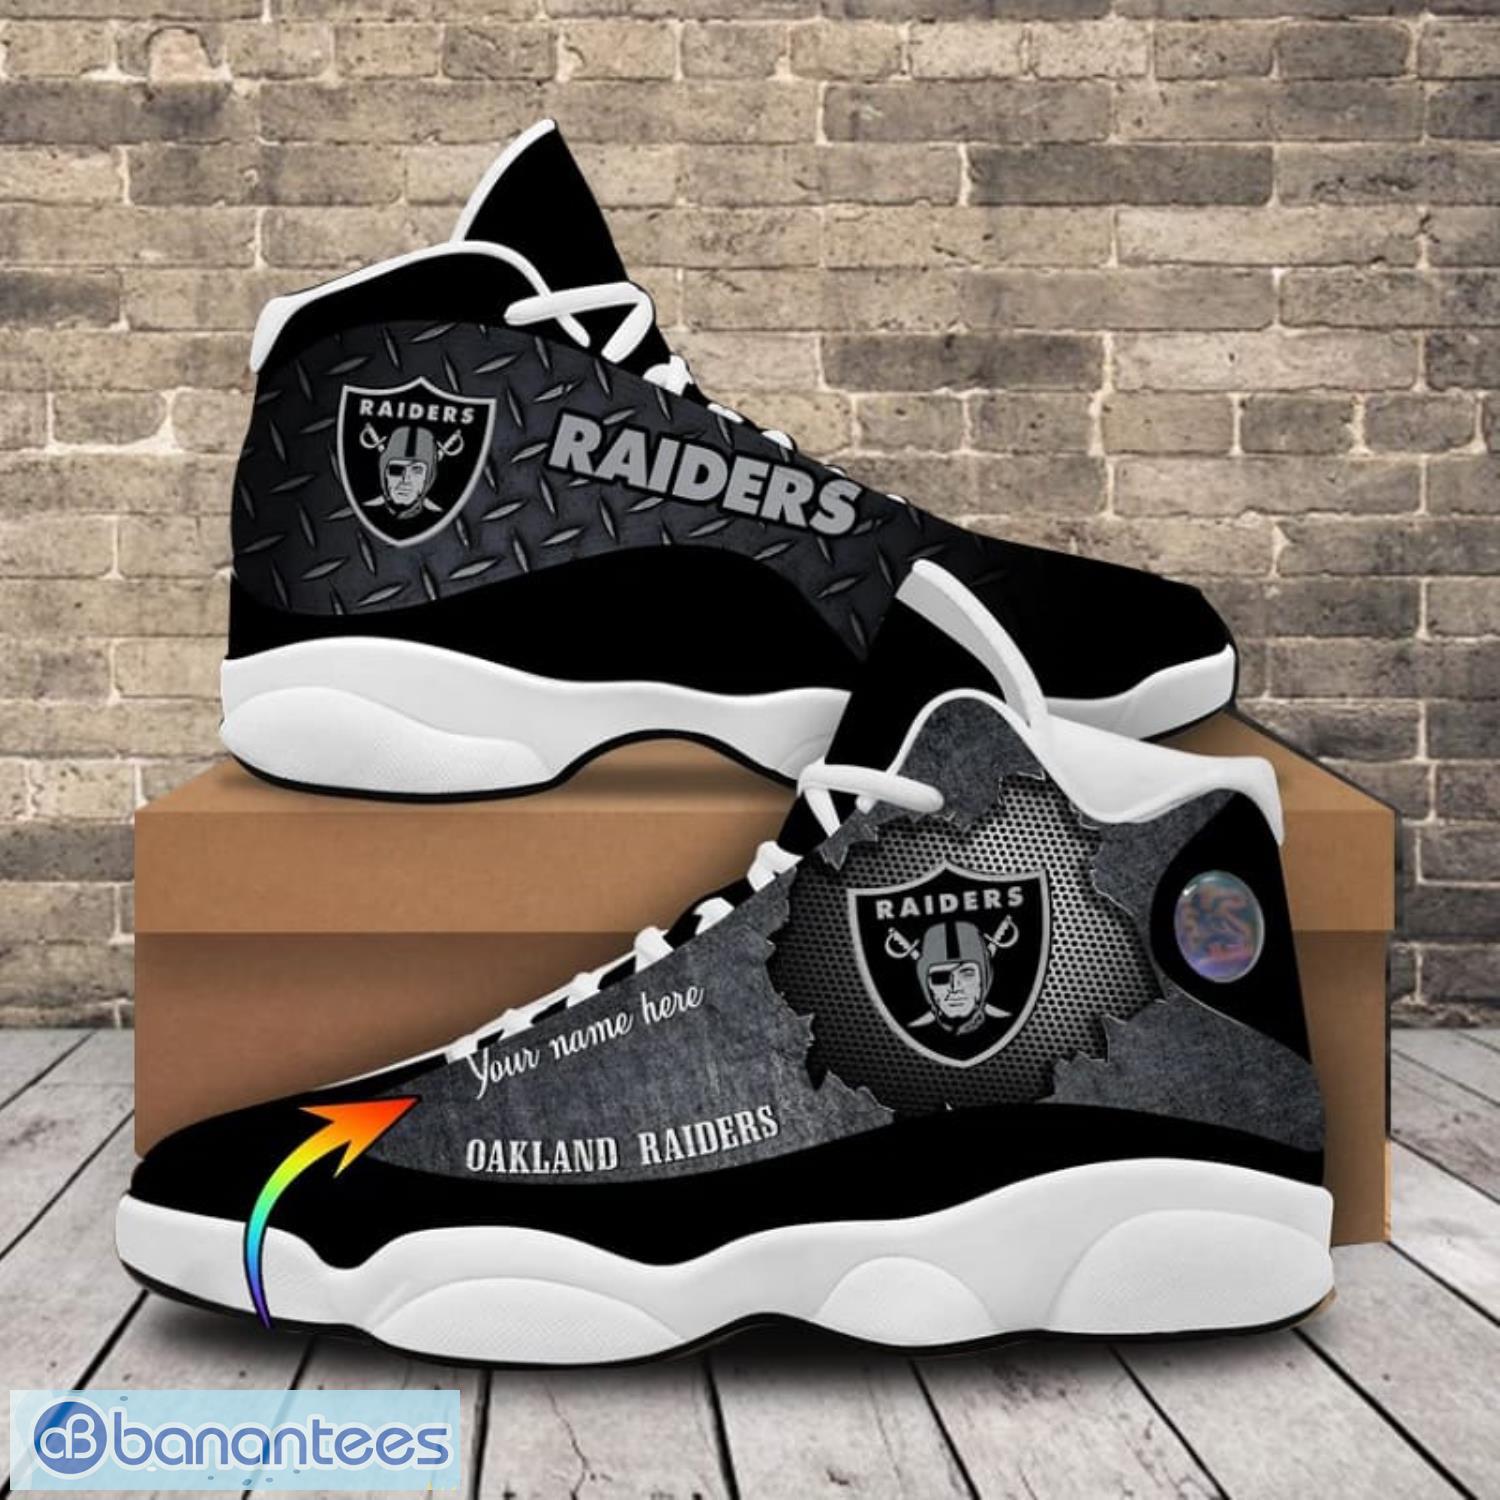 Las Vegas Raiders Camo Pattern Air Jordan 13 Shoes For Fans